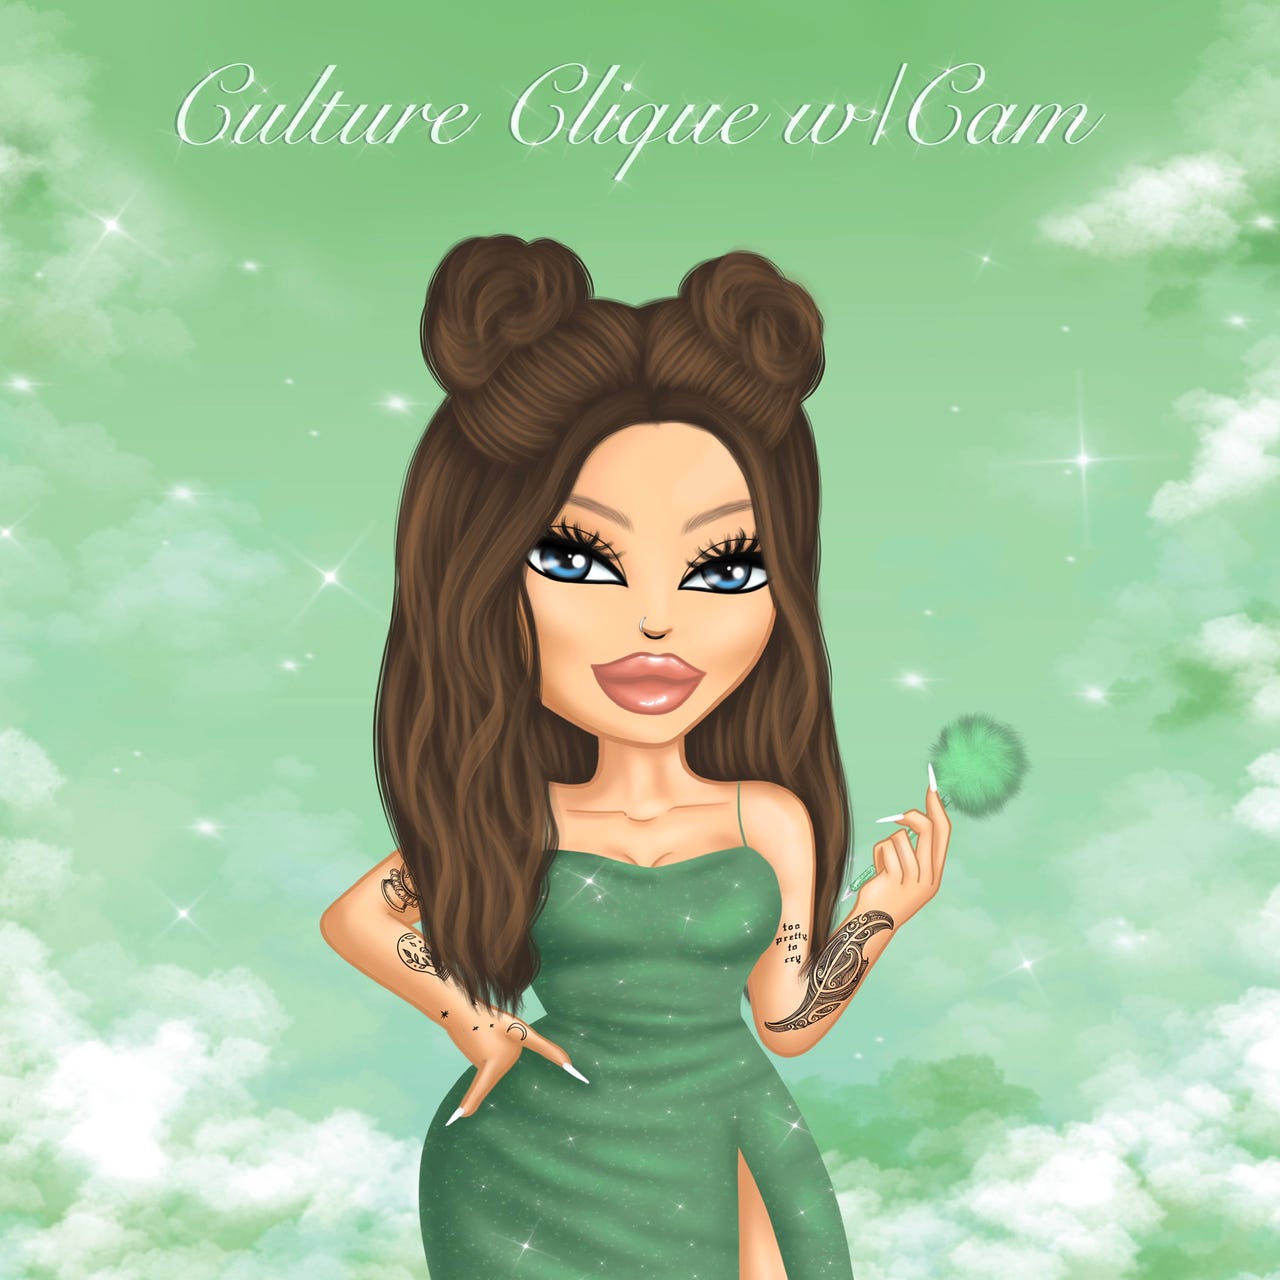 Culture Clique w/ Cam